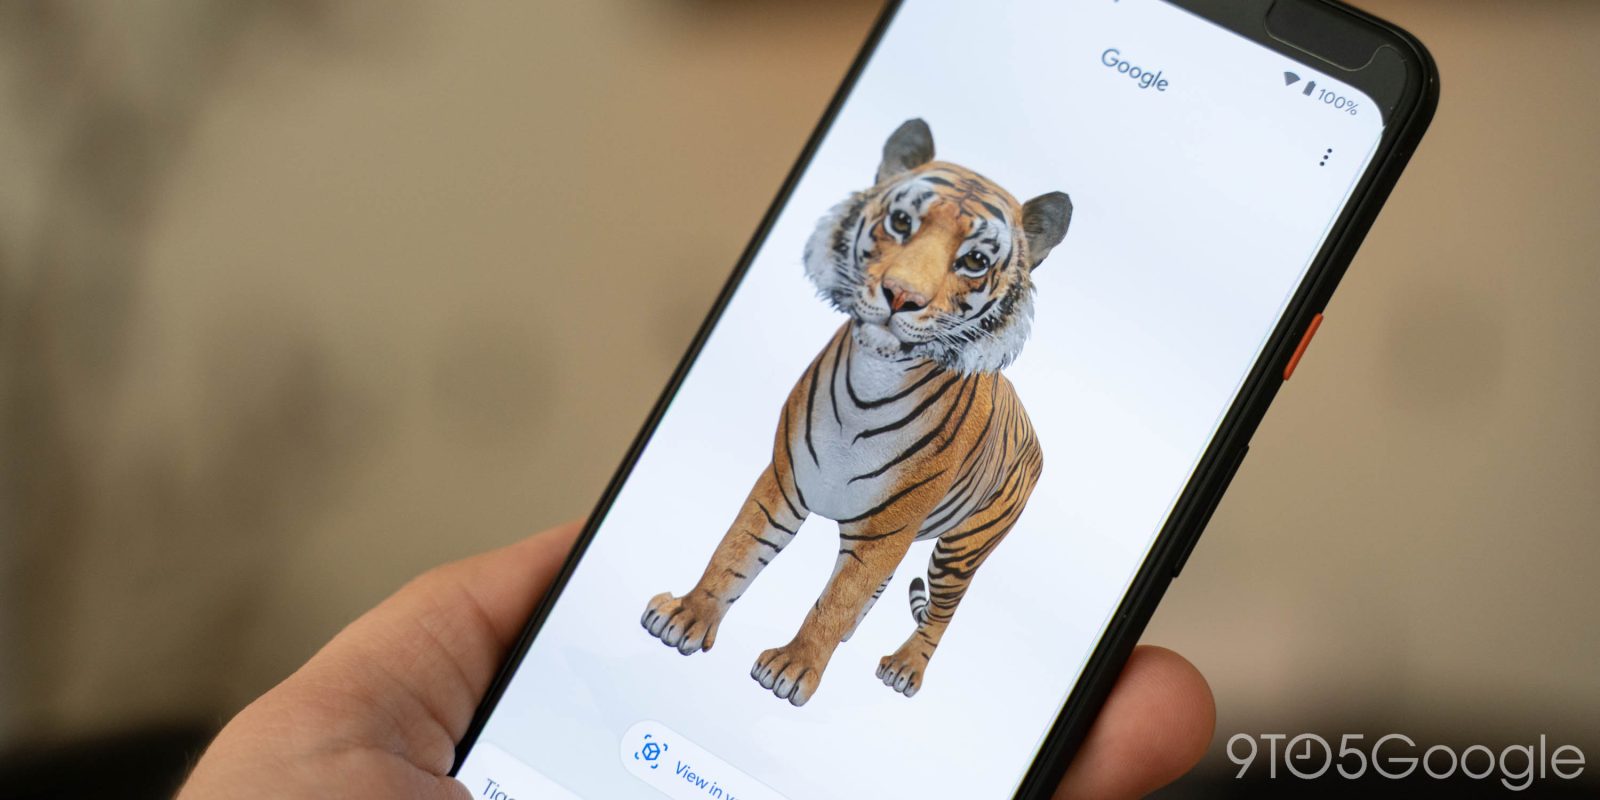 Hướng dẫn cách chụp hình thú 3D ngay trong nhà cùng Google 3D Android 7